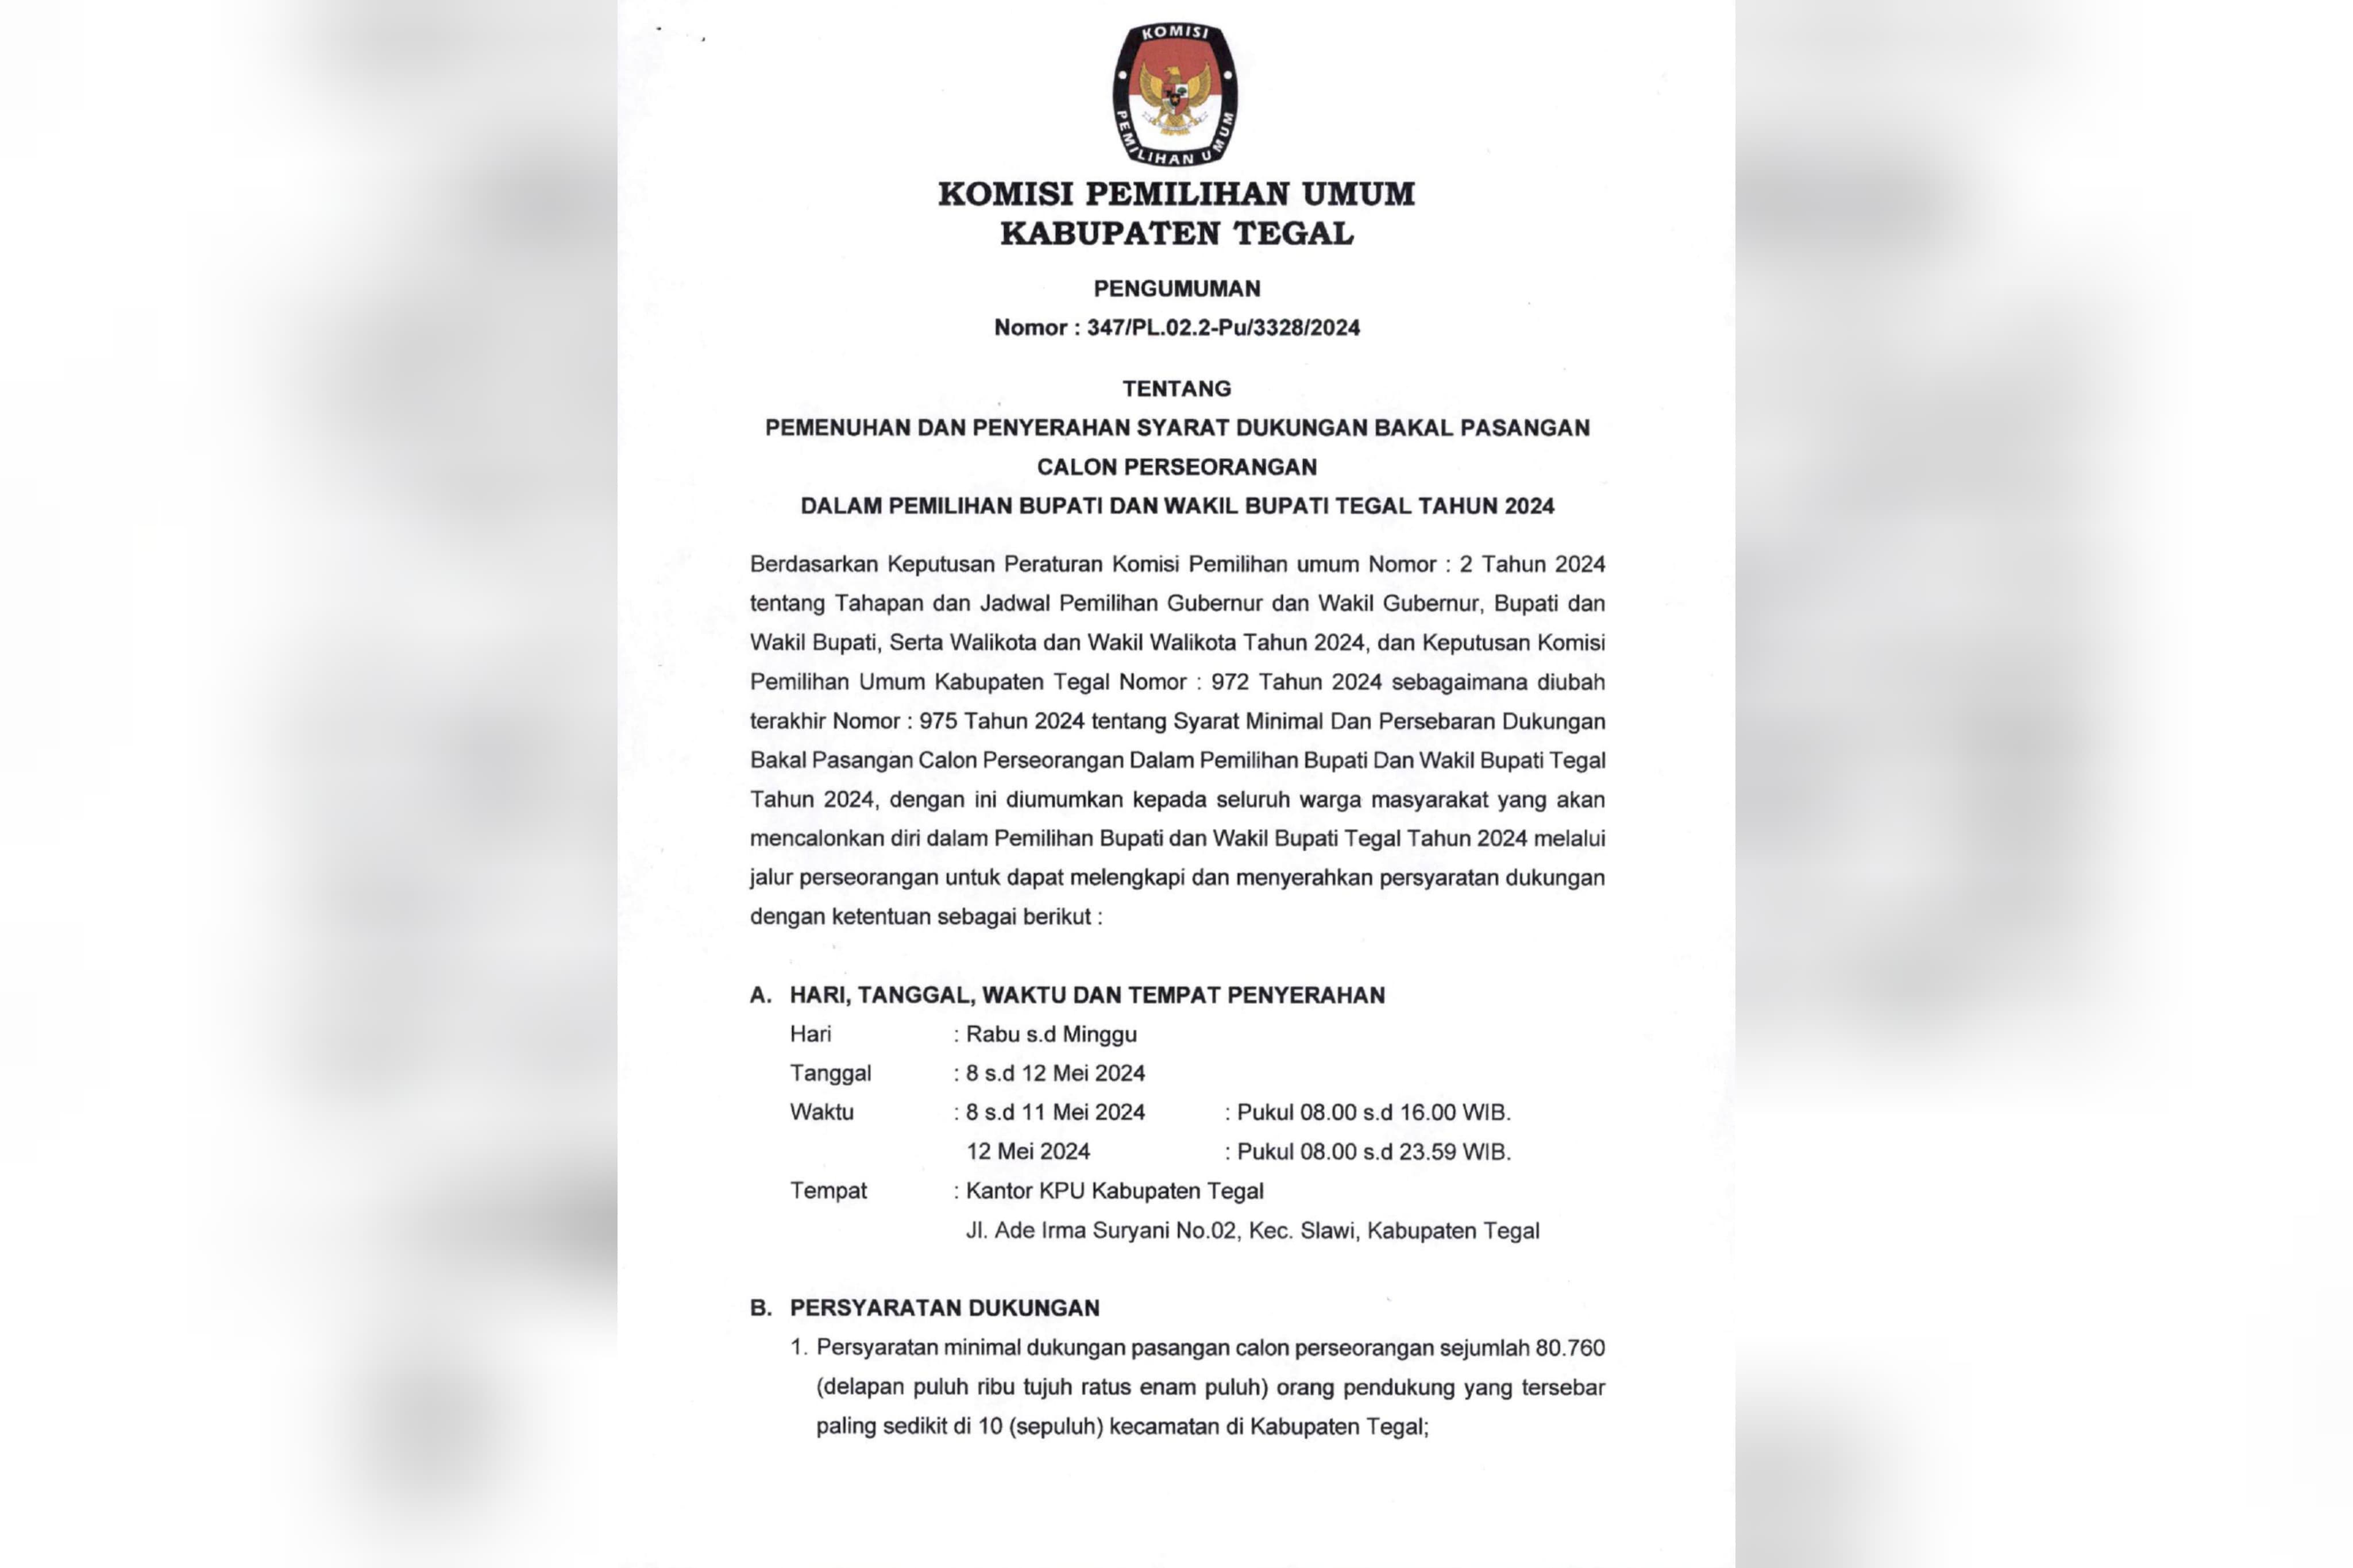 Pemenuhan dan Penyerahan Syarat Dukungan Bacalon Perseorangan Pemilihan Bupati dan Wakil Bupati Tegal 2024